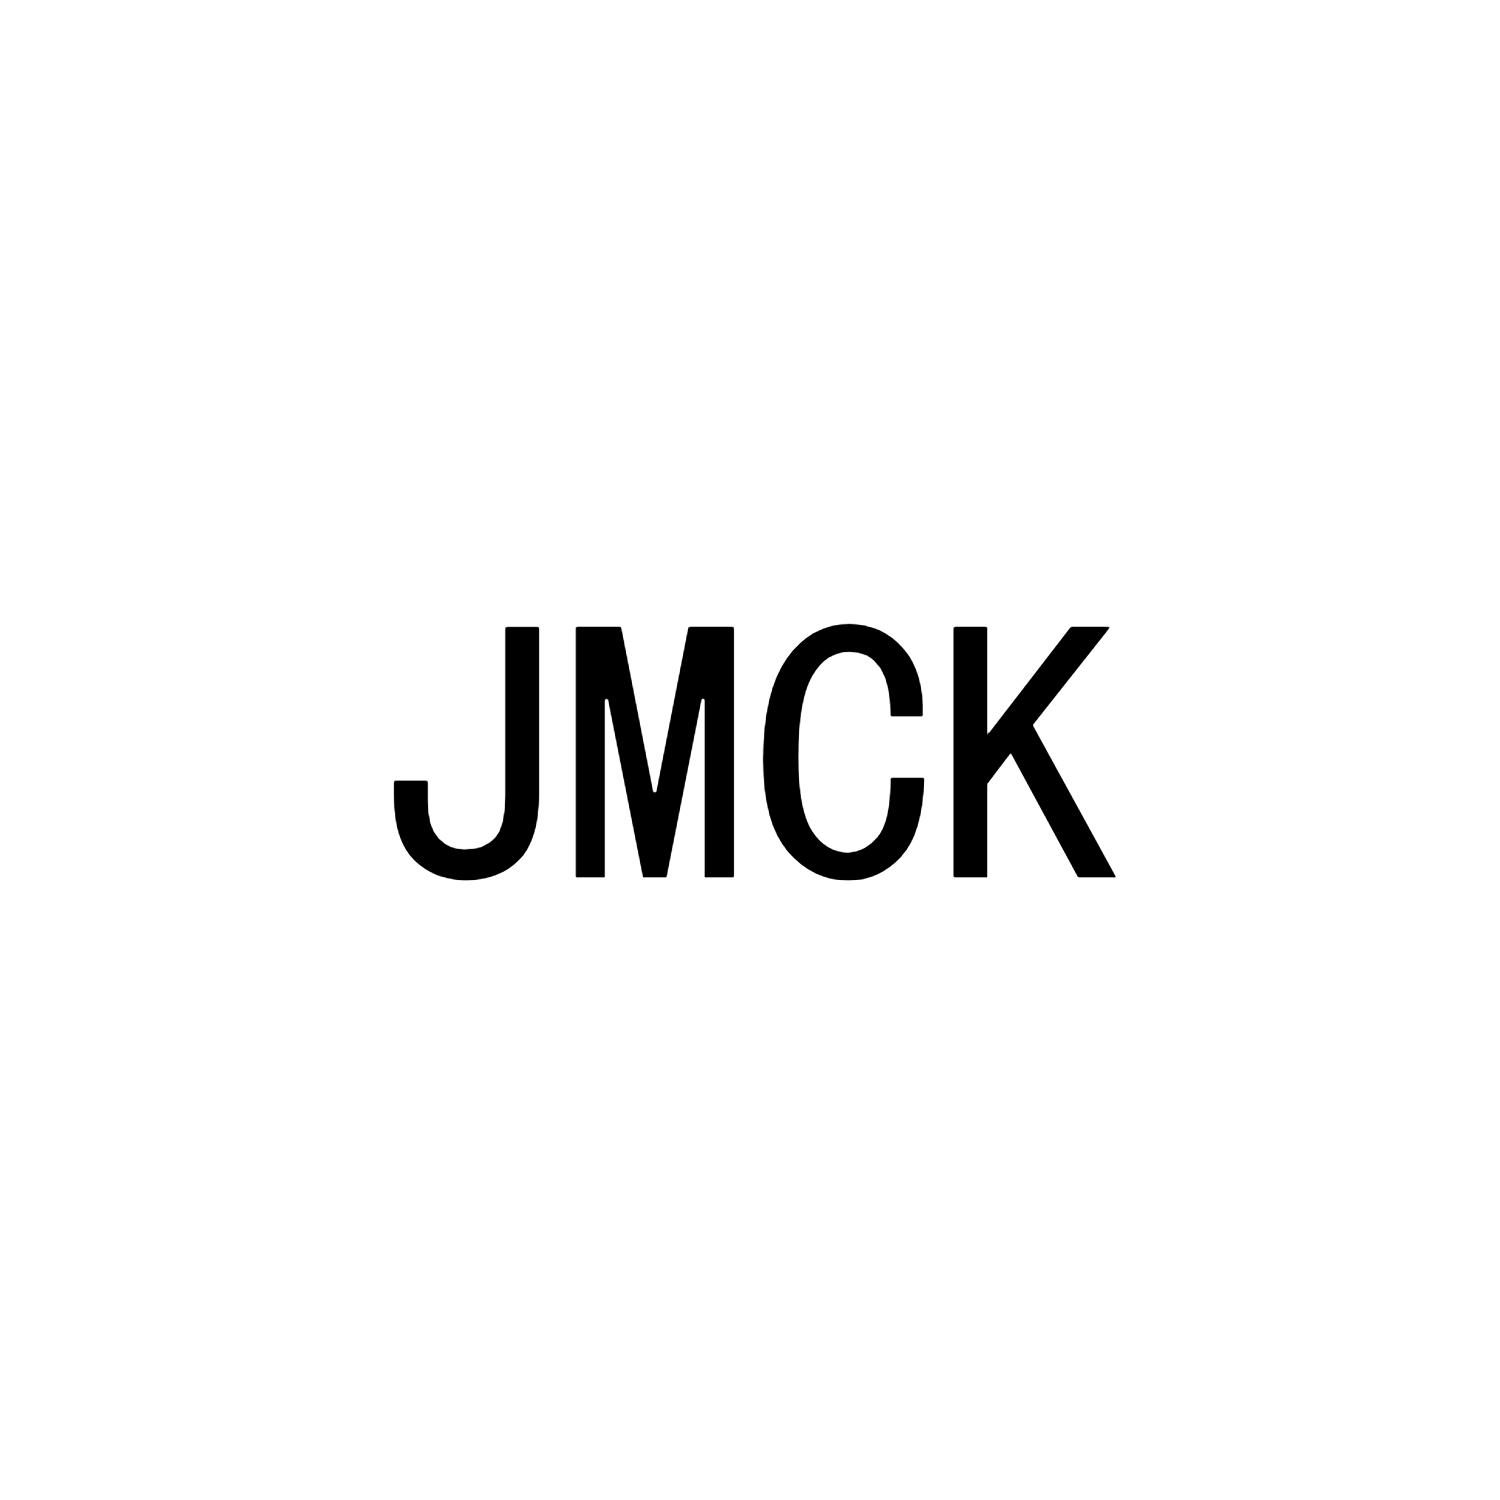 JMCK